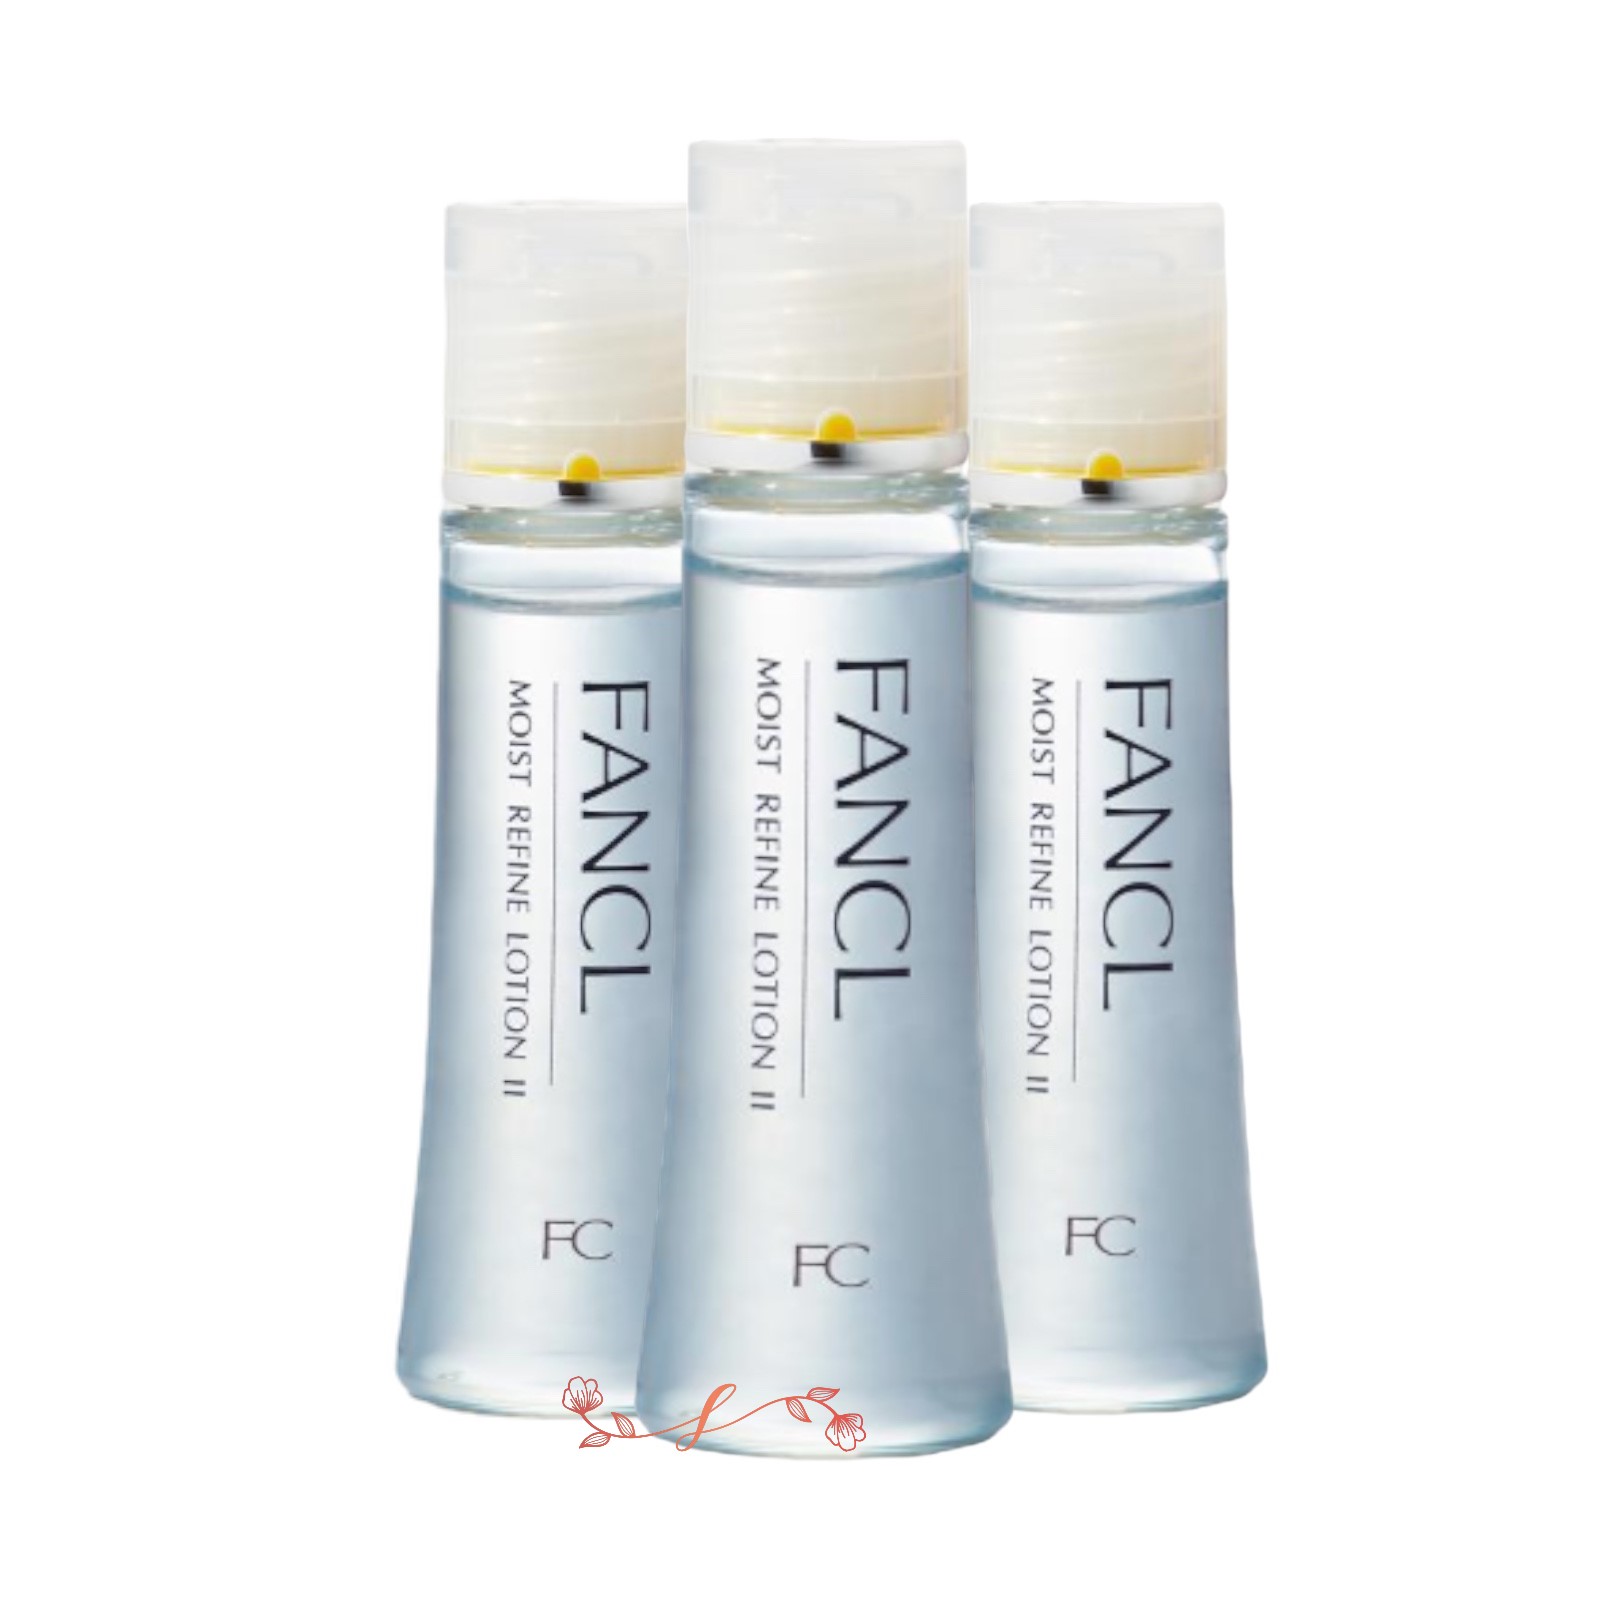 FANCL ファンケル モイストリファイン 化粧液 I さっぱり 30ml ×3本 MOIST REFINE スキンケア、フェイスケア化粧水の商品画像